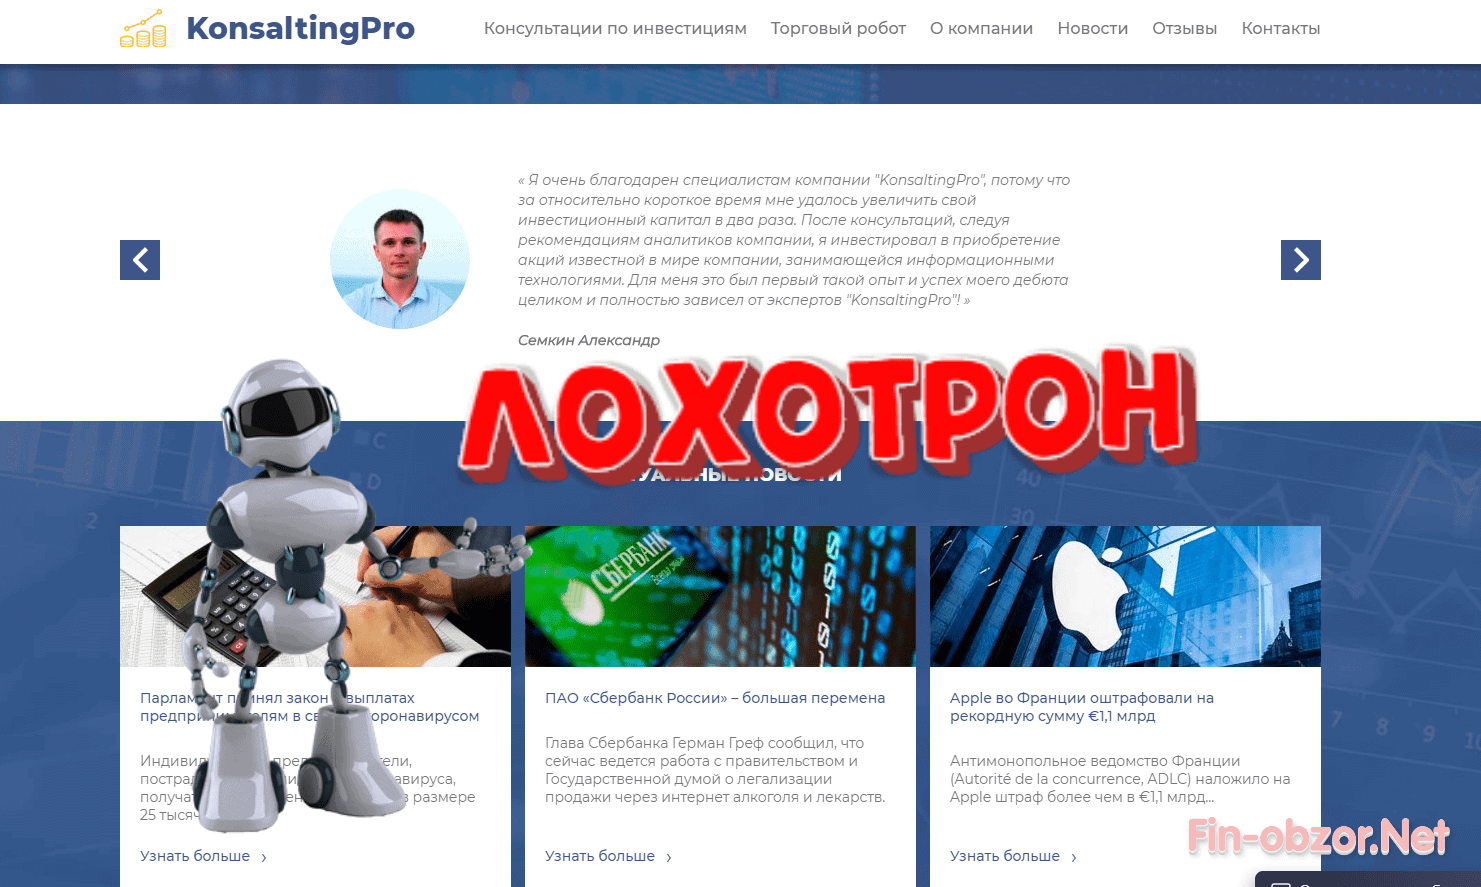 KonsaltingPro - обзор и отзывы о konsaltingpro.cz. Развод